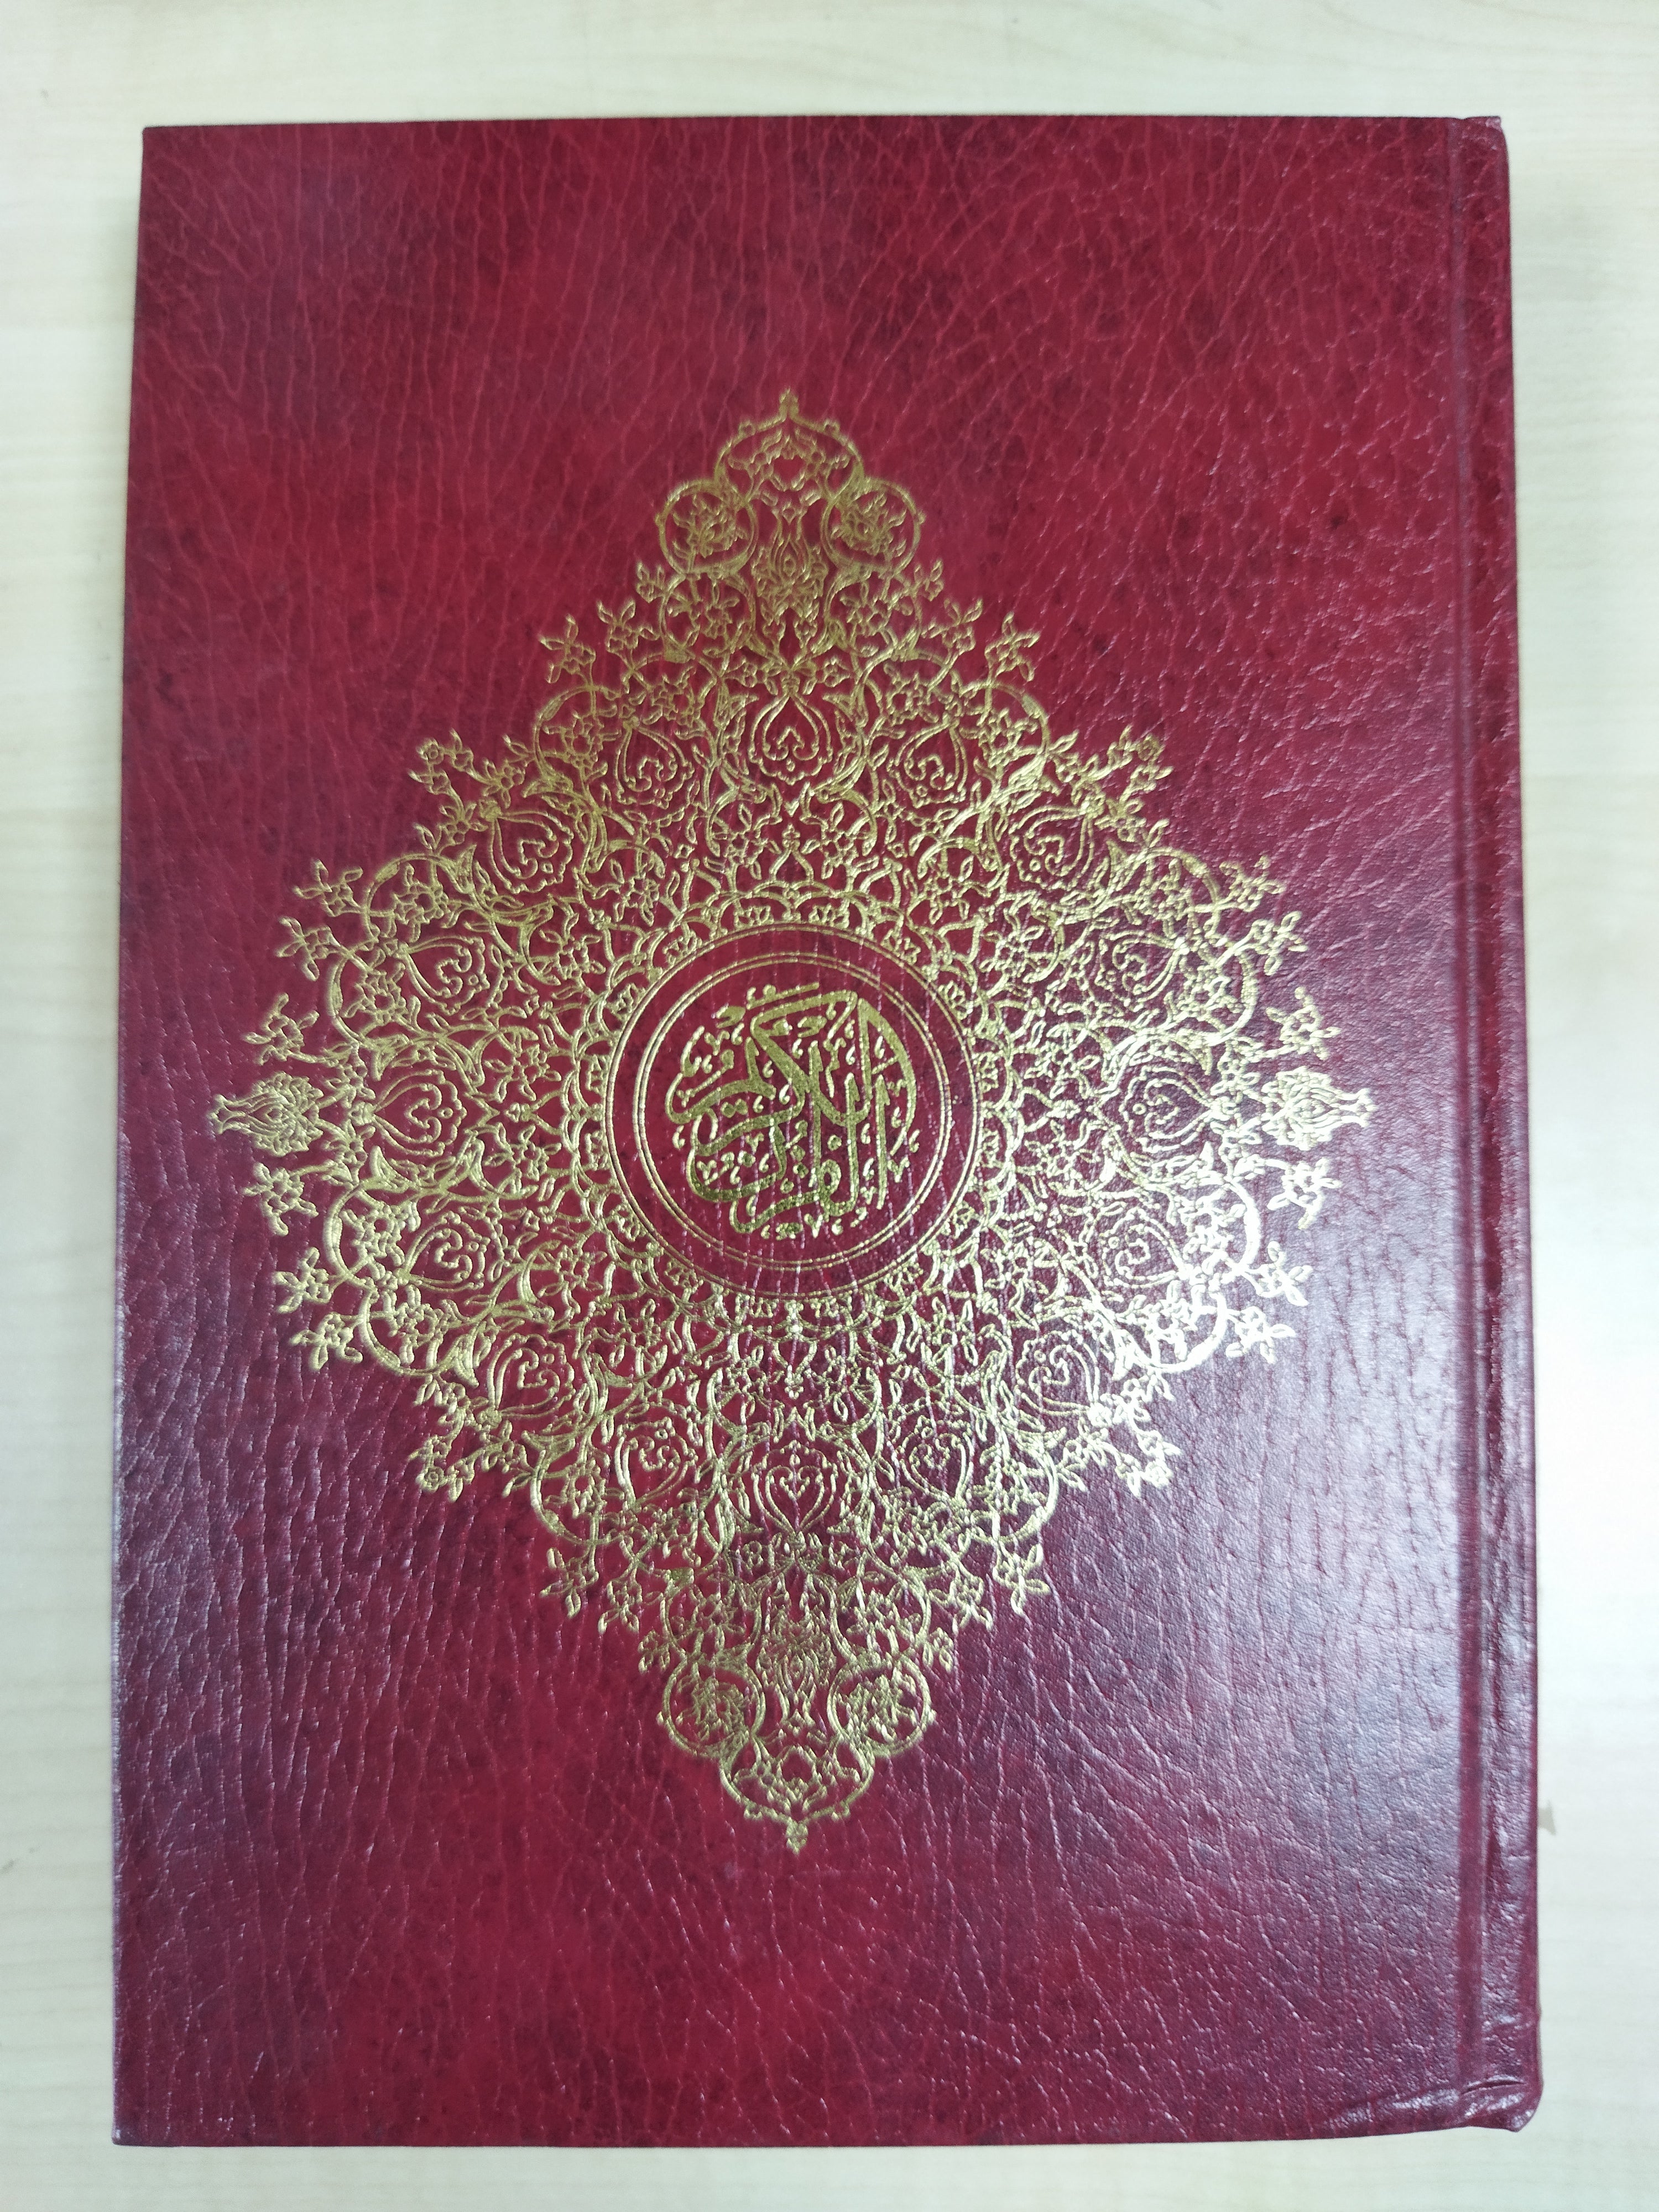 Qur'an - Arabic